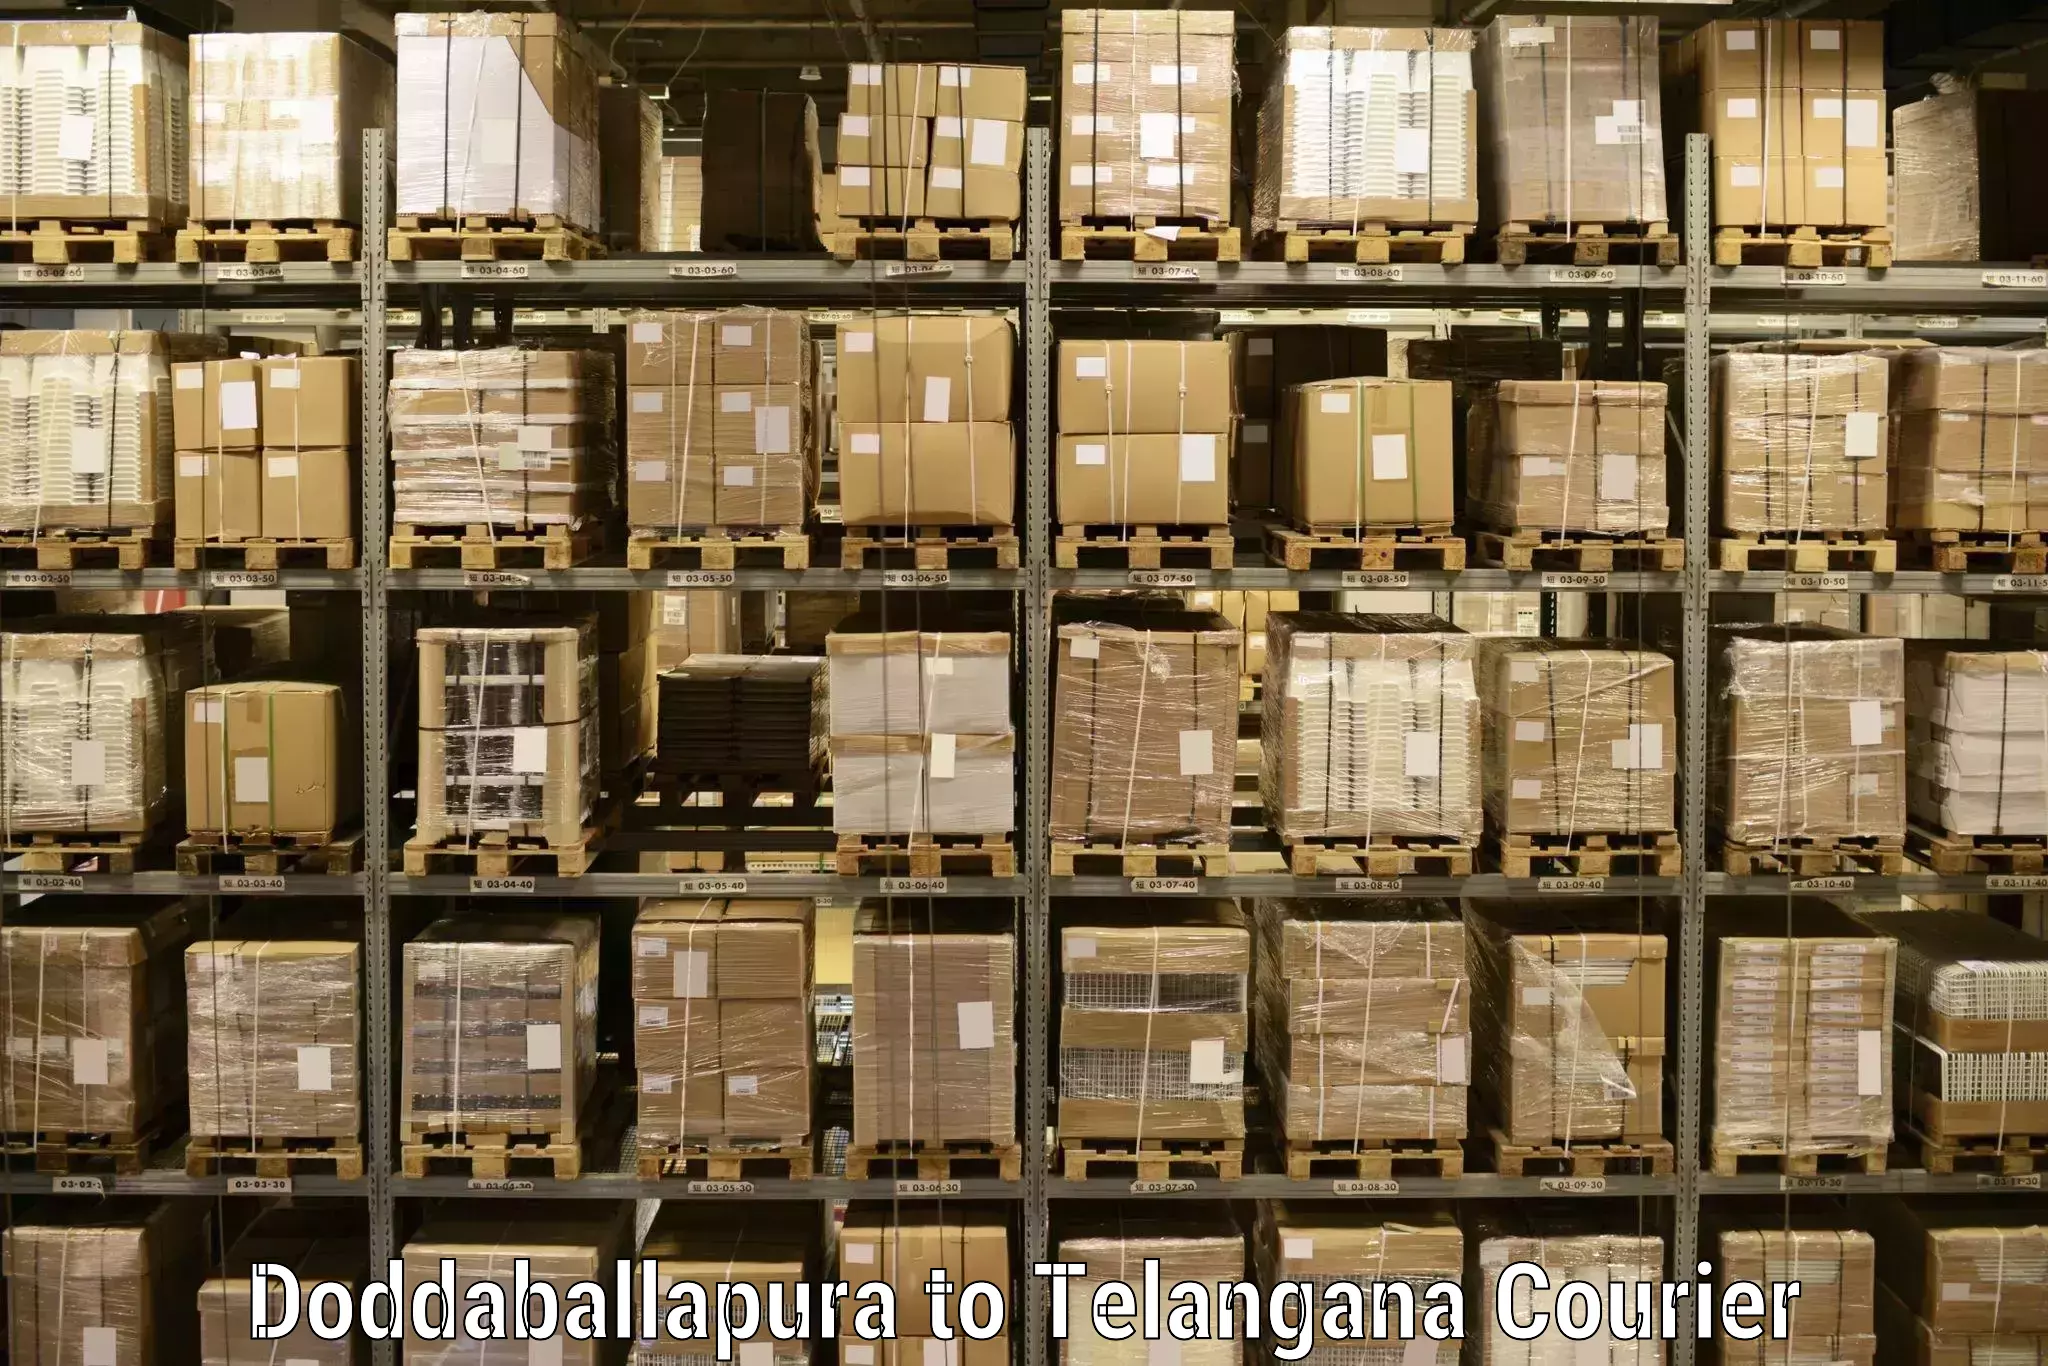 Bulk shipping discounts Doddaballapura to Bhupalpally